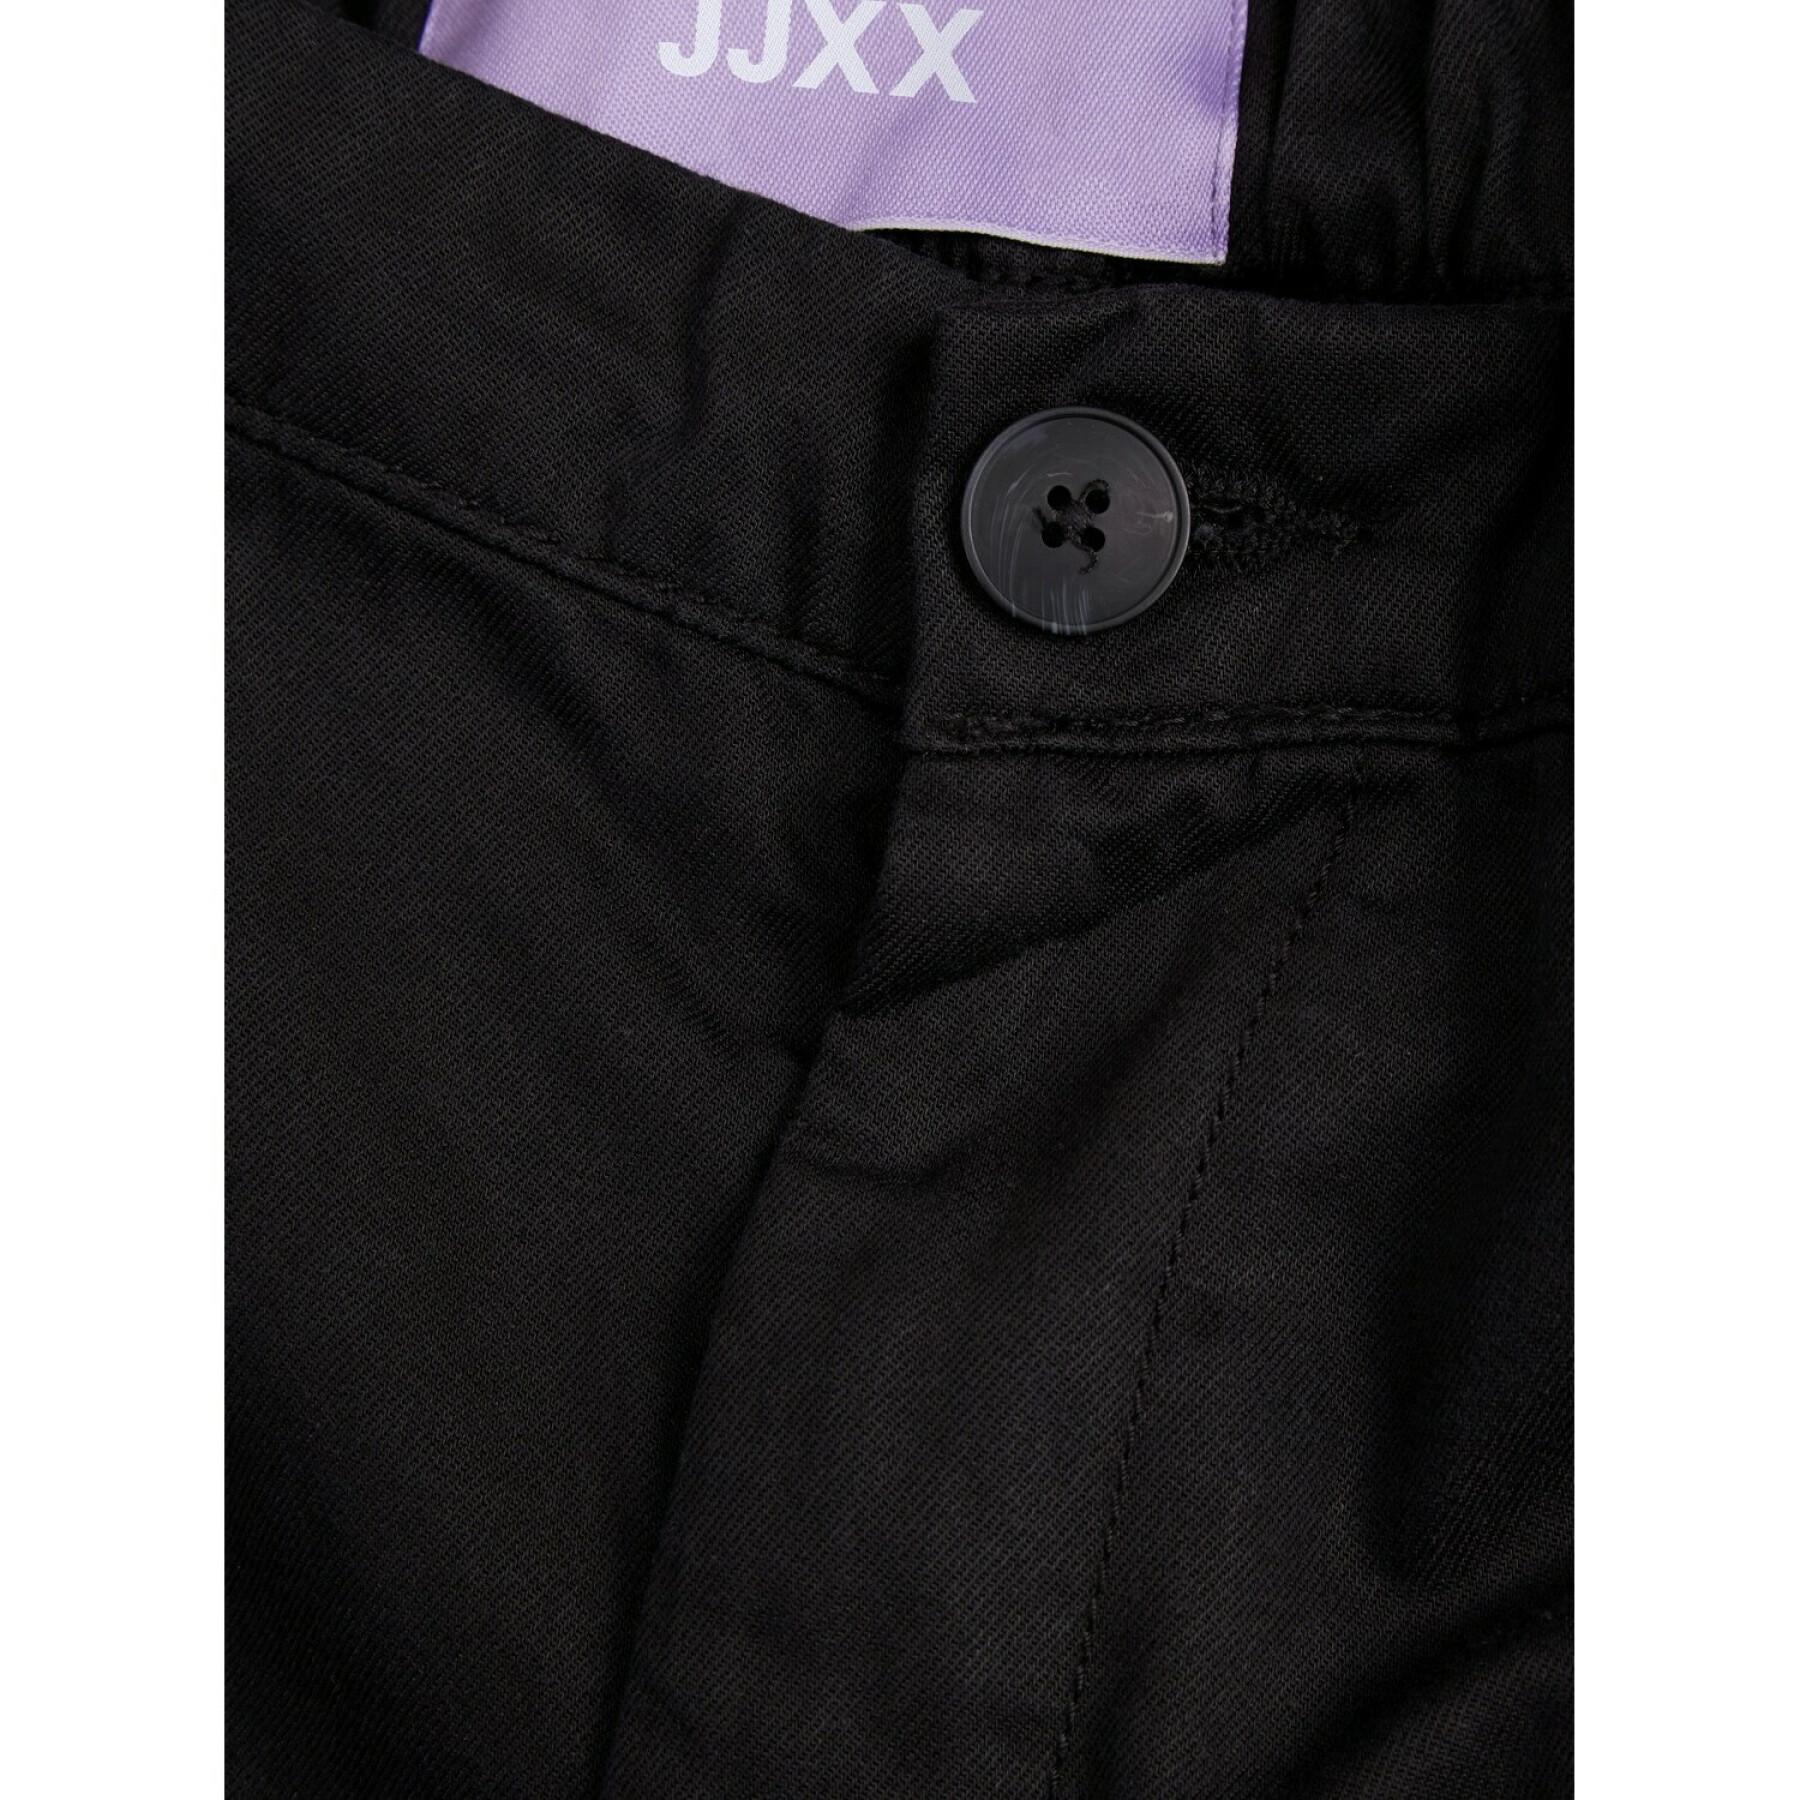 Cargo broek voor dames JJXX holly